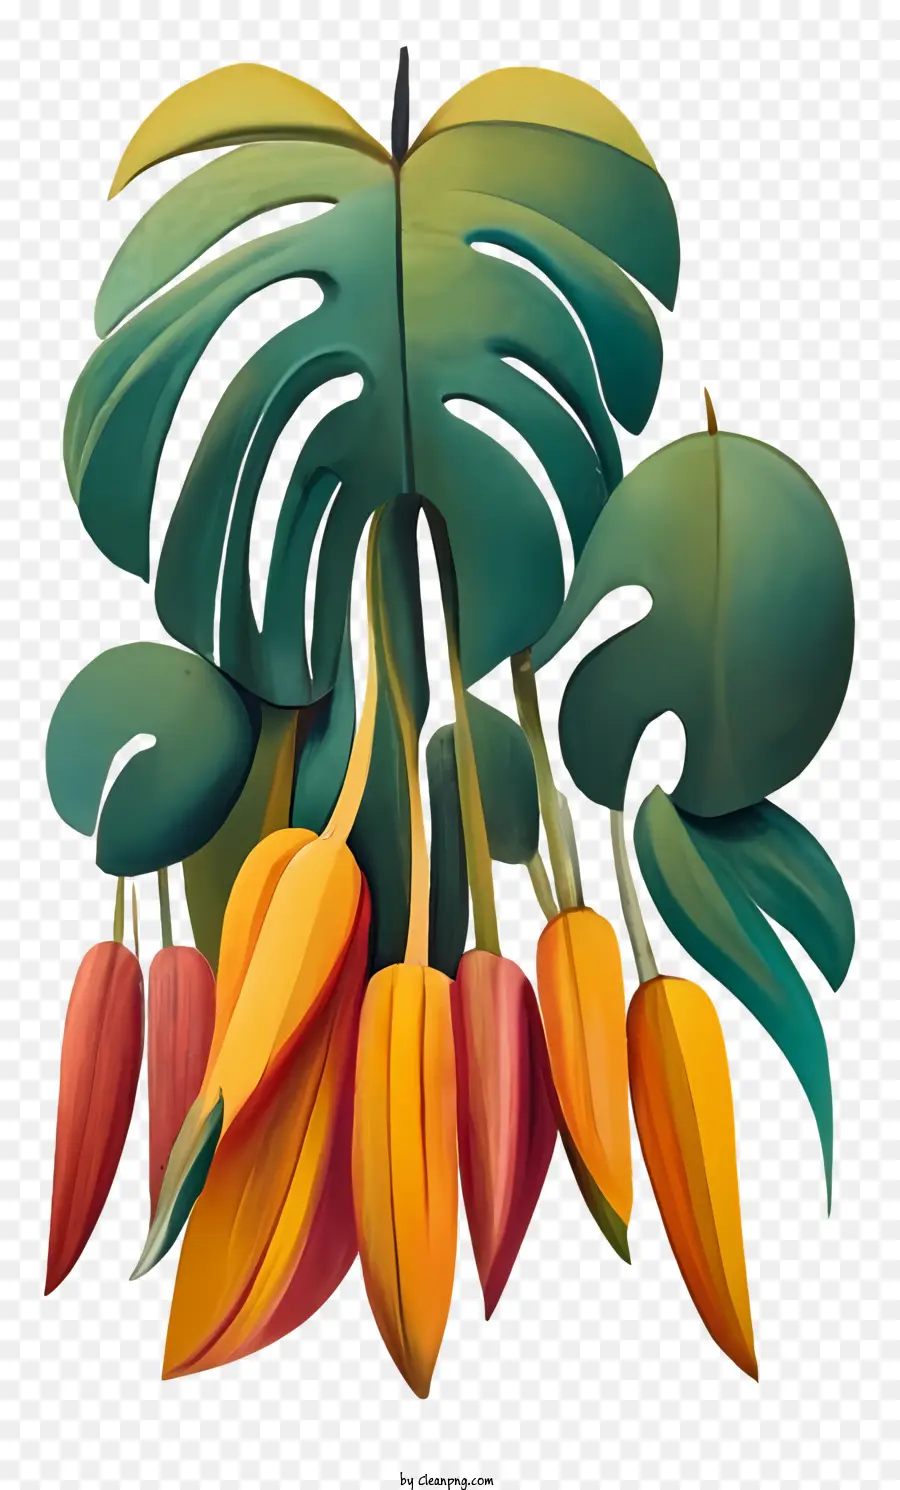 Orange - Farbenfrohe Pflanze mit großen, lebendigen Blüten